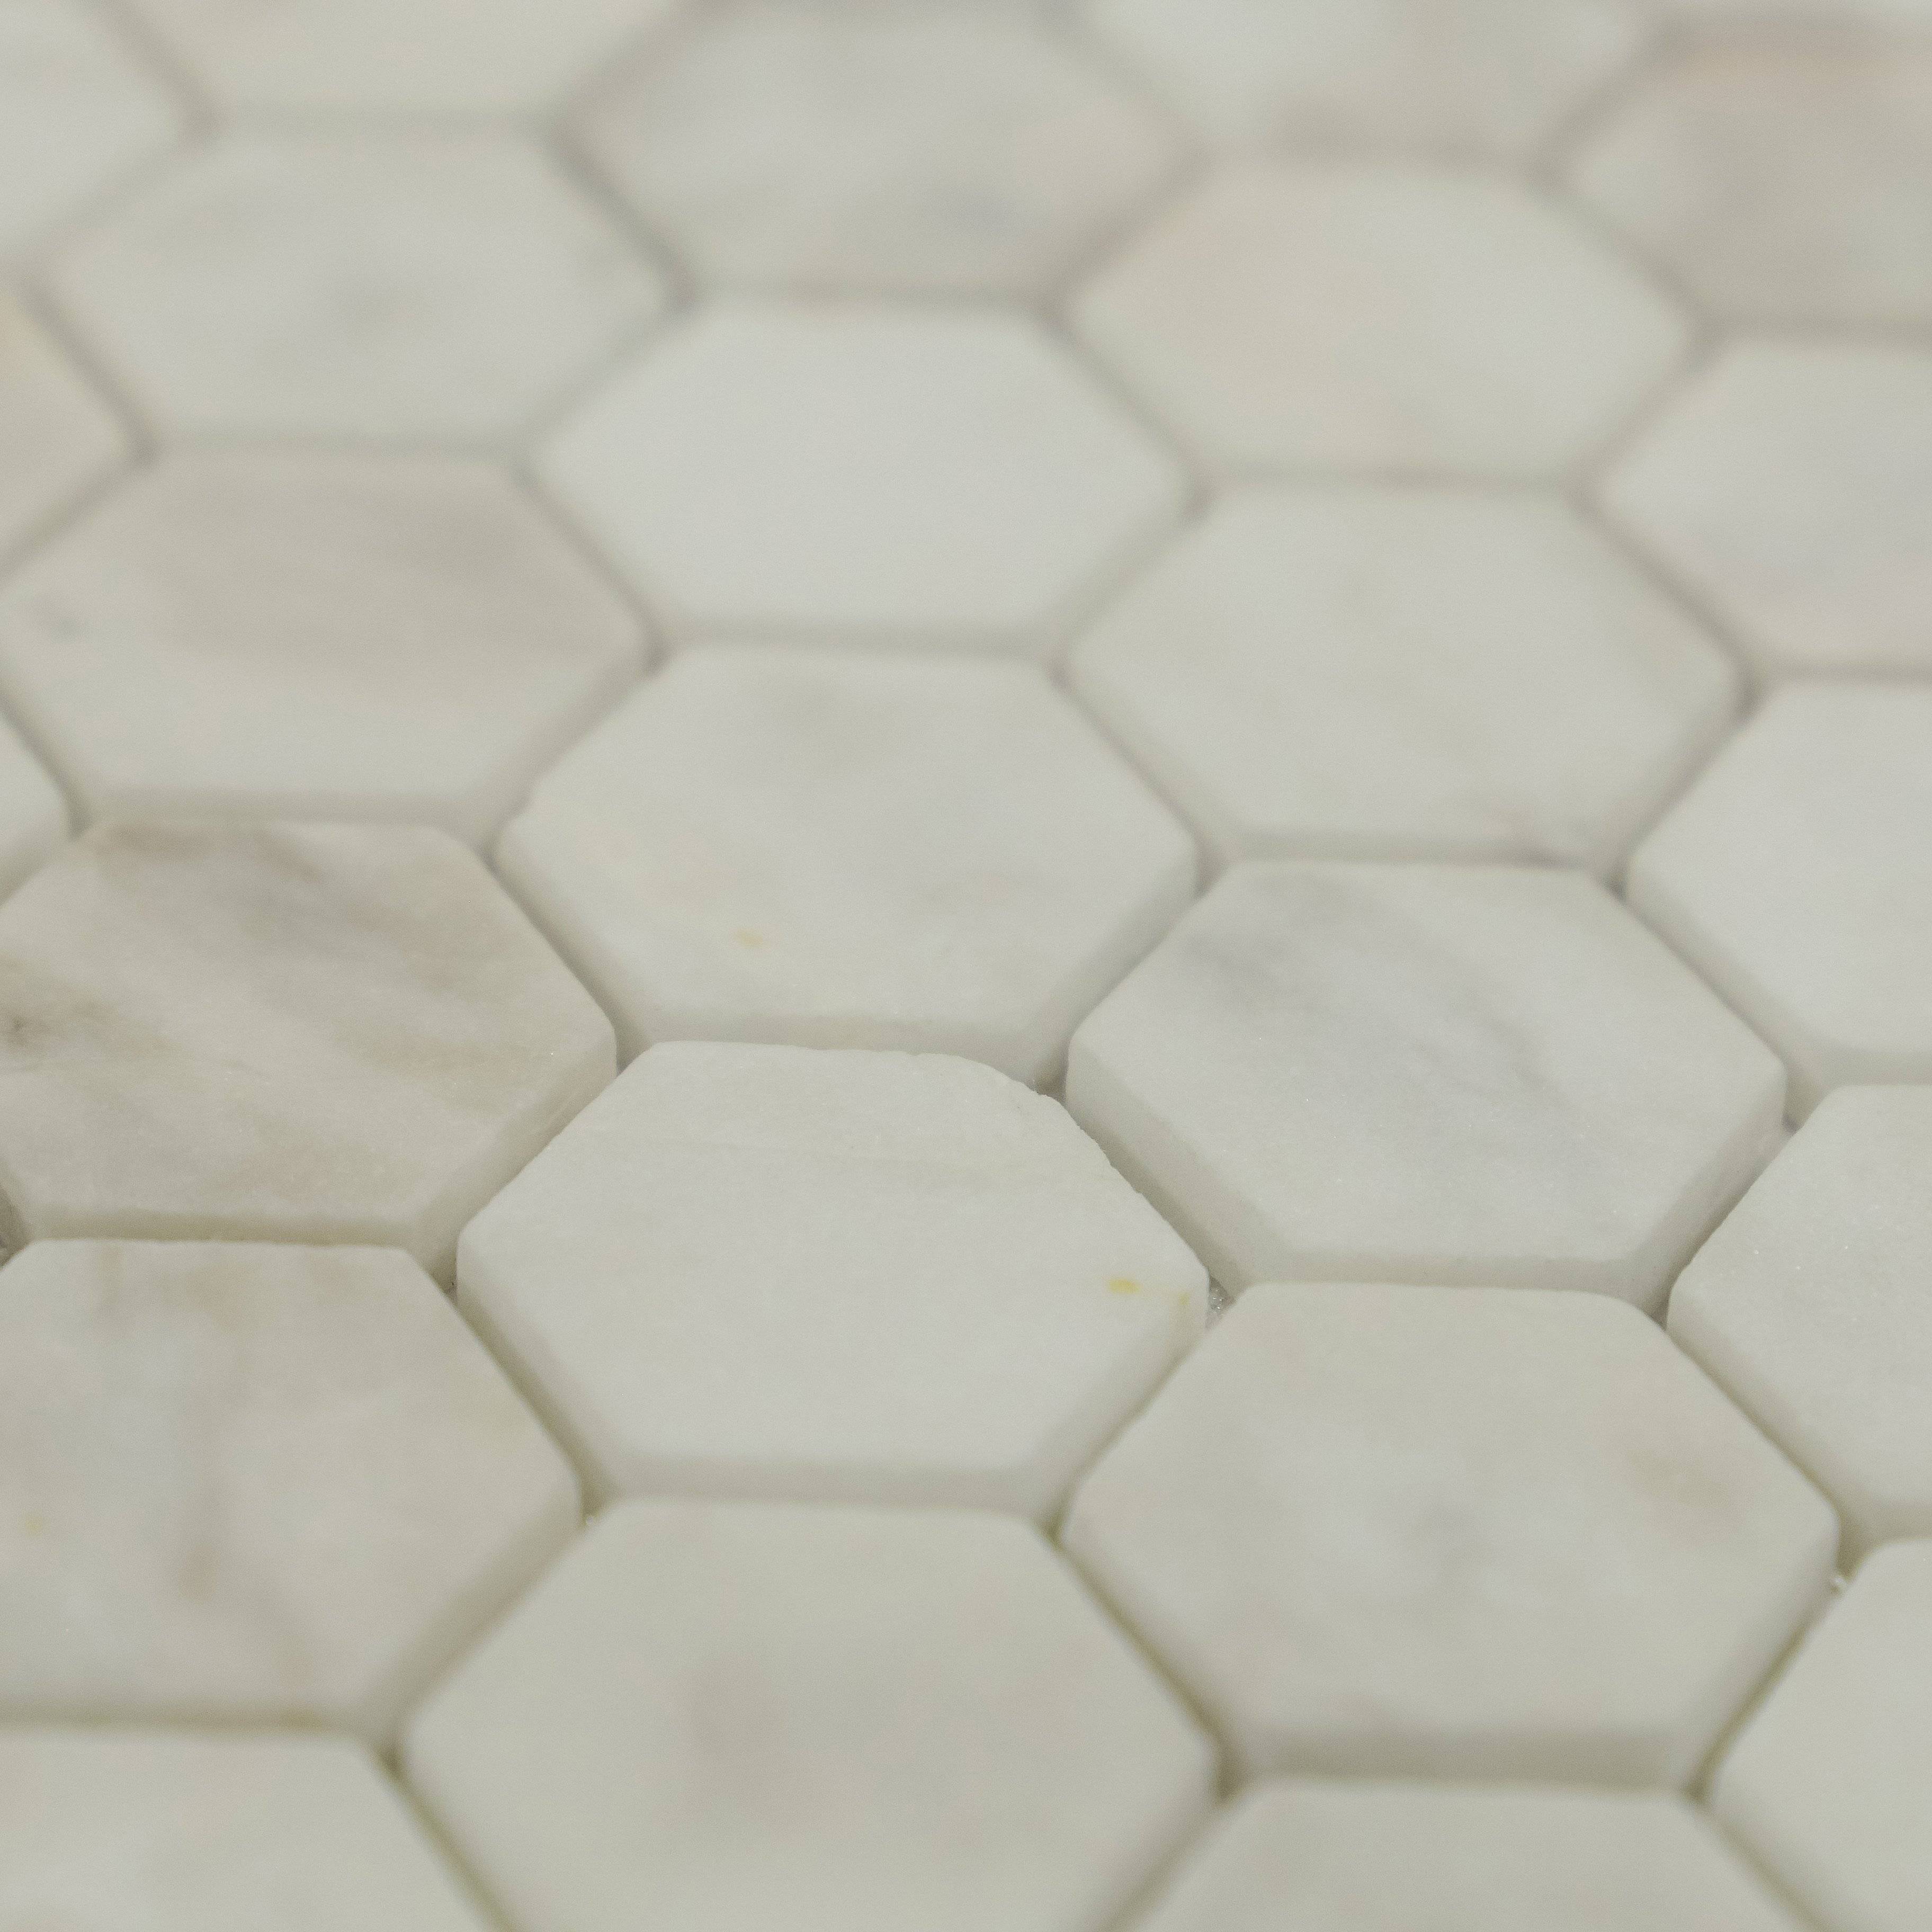 Мозаика Pietrine Dolomiti Bianco MAT Hexagon, Leedo Ceramica К-0082